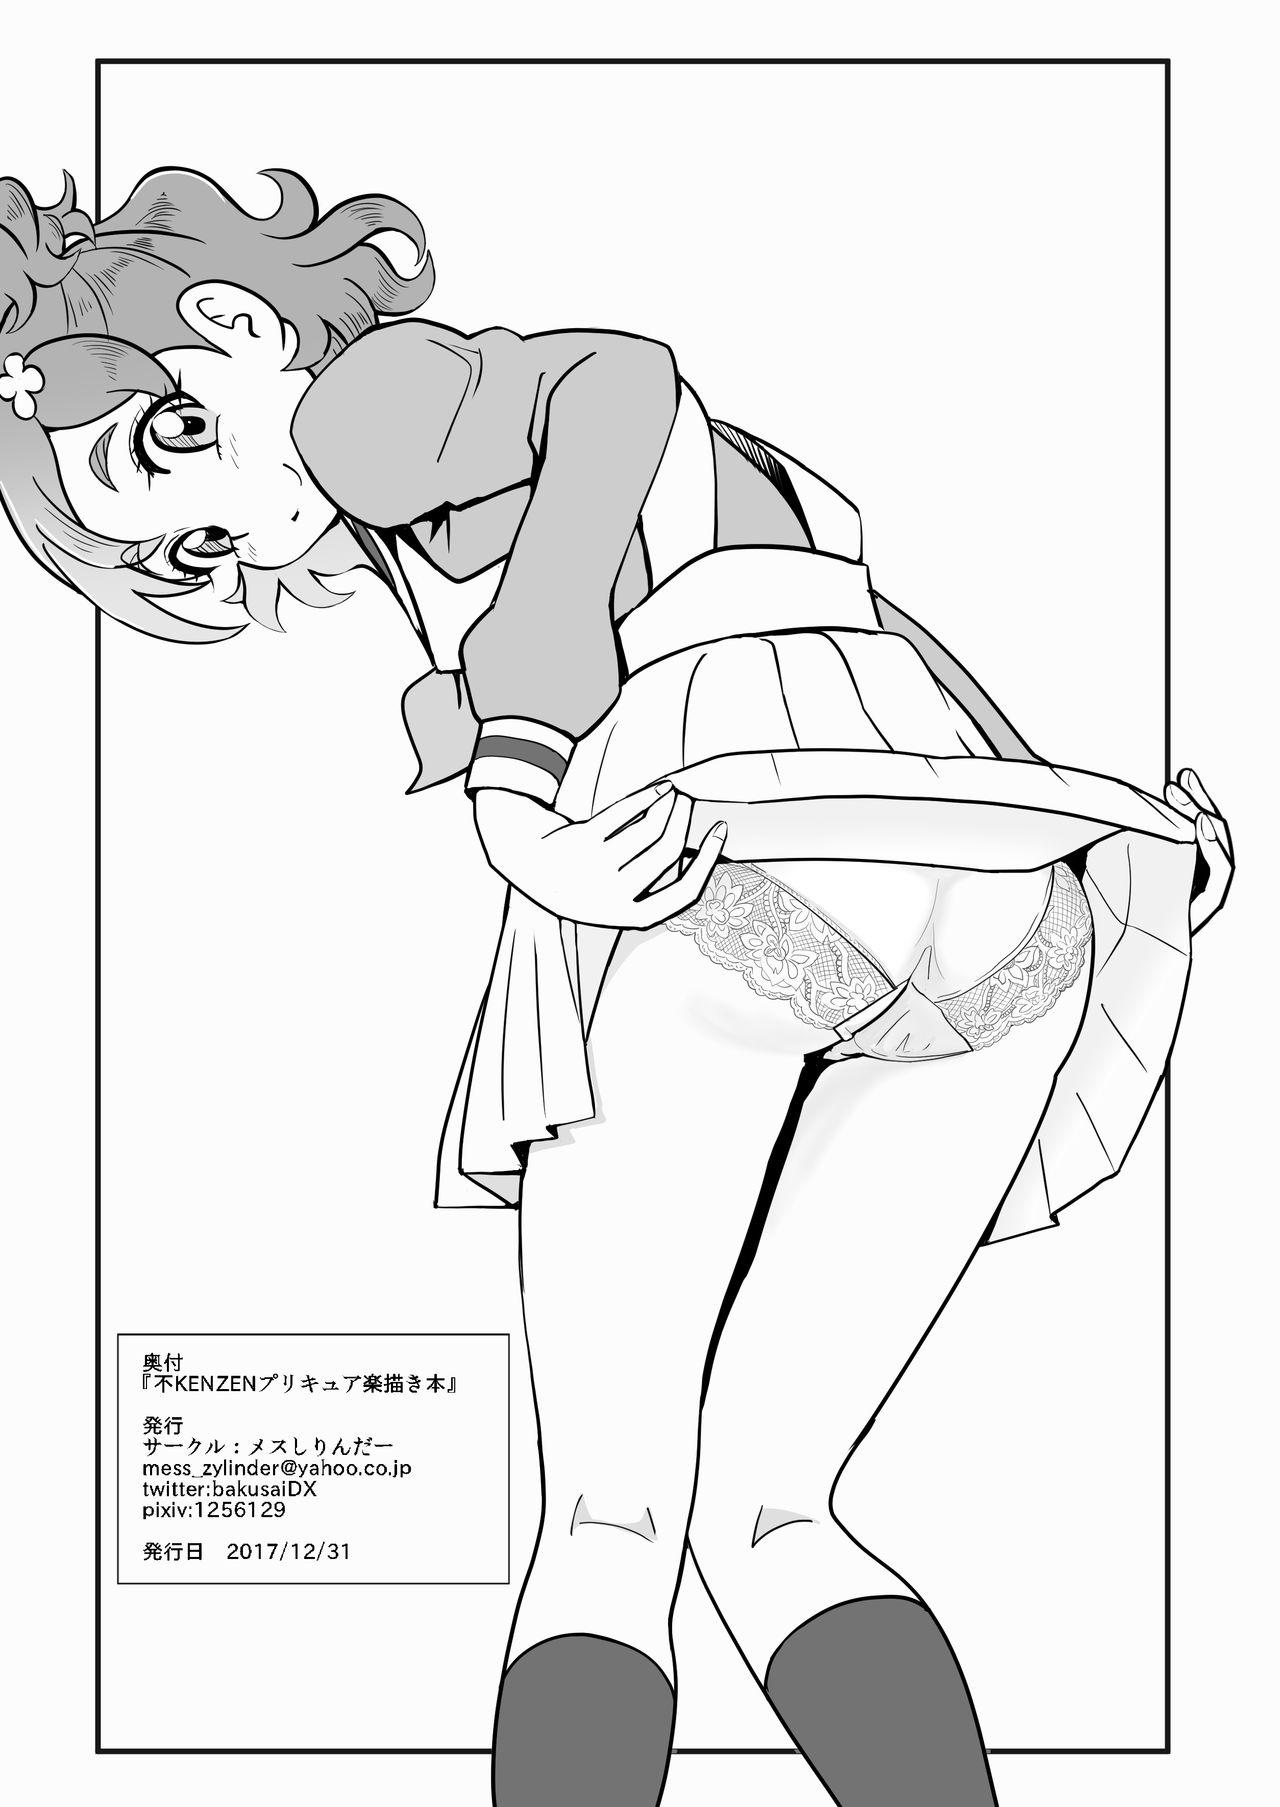 Mess Zylinder Vol. 03 PreCure no Iru Chou Koukyuu Fuuzokuten Series + Rakugaki Bon 29